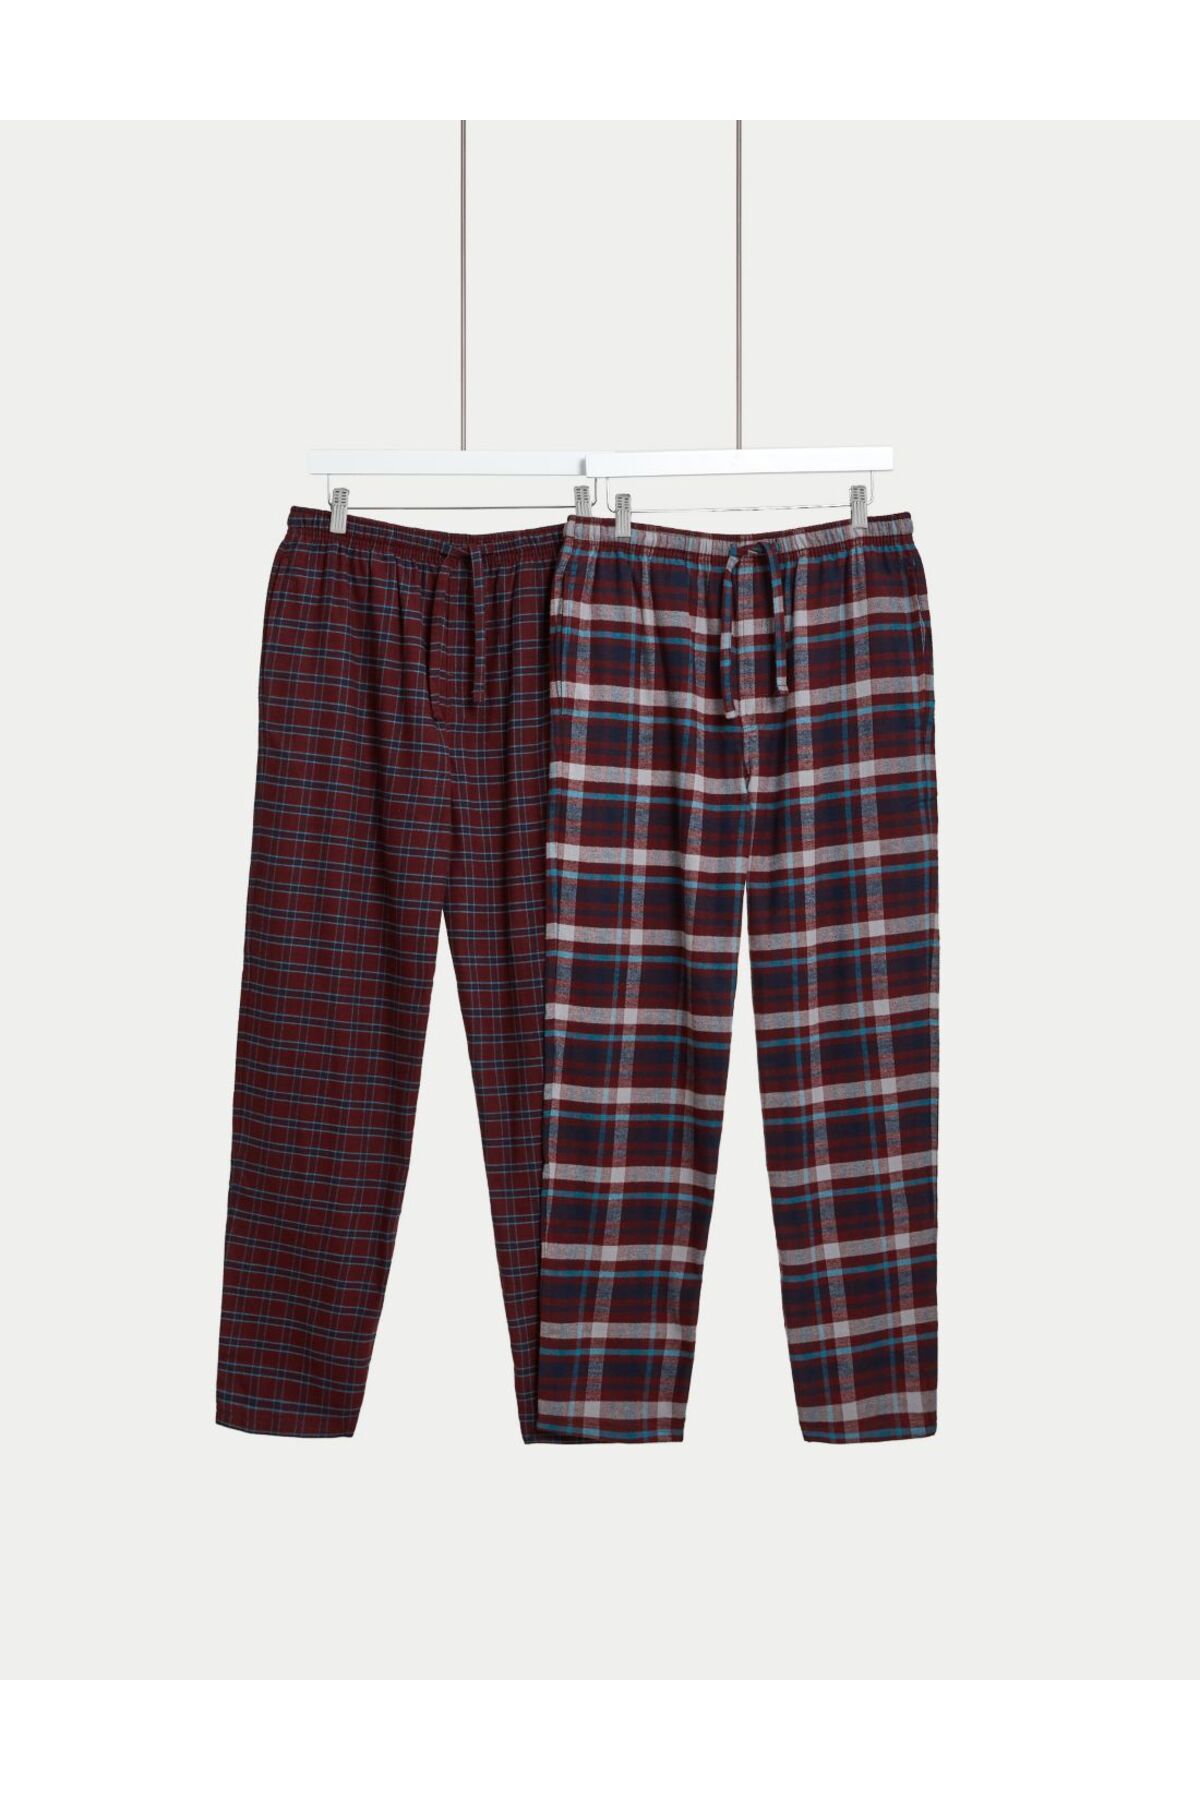 Marks & Spencer Saf Pamuklu 2'li Pijama Altı Seti